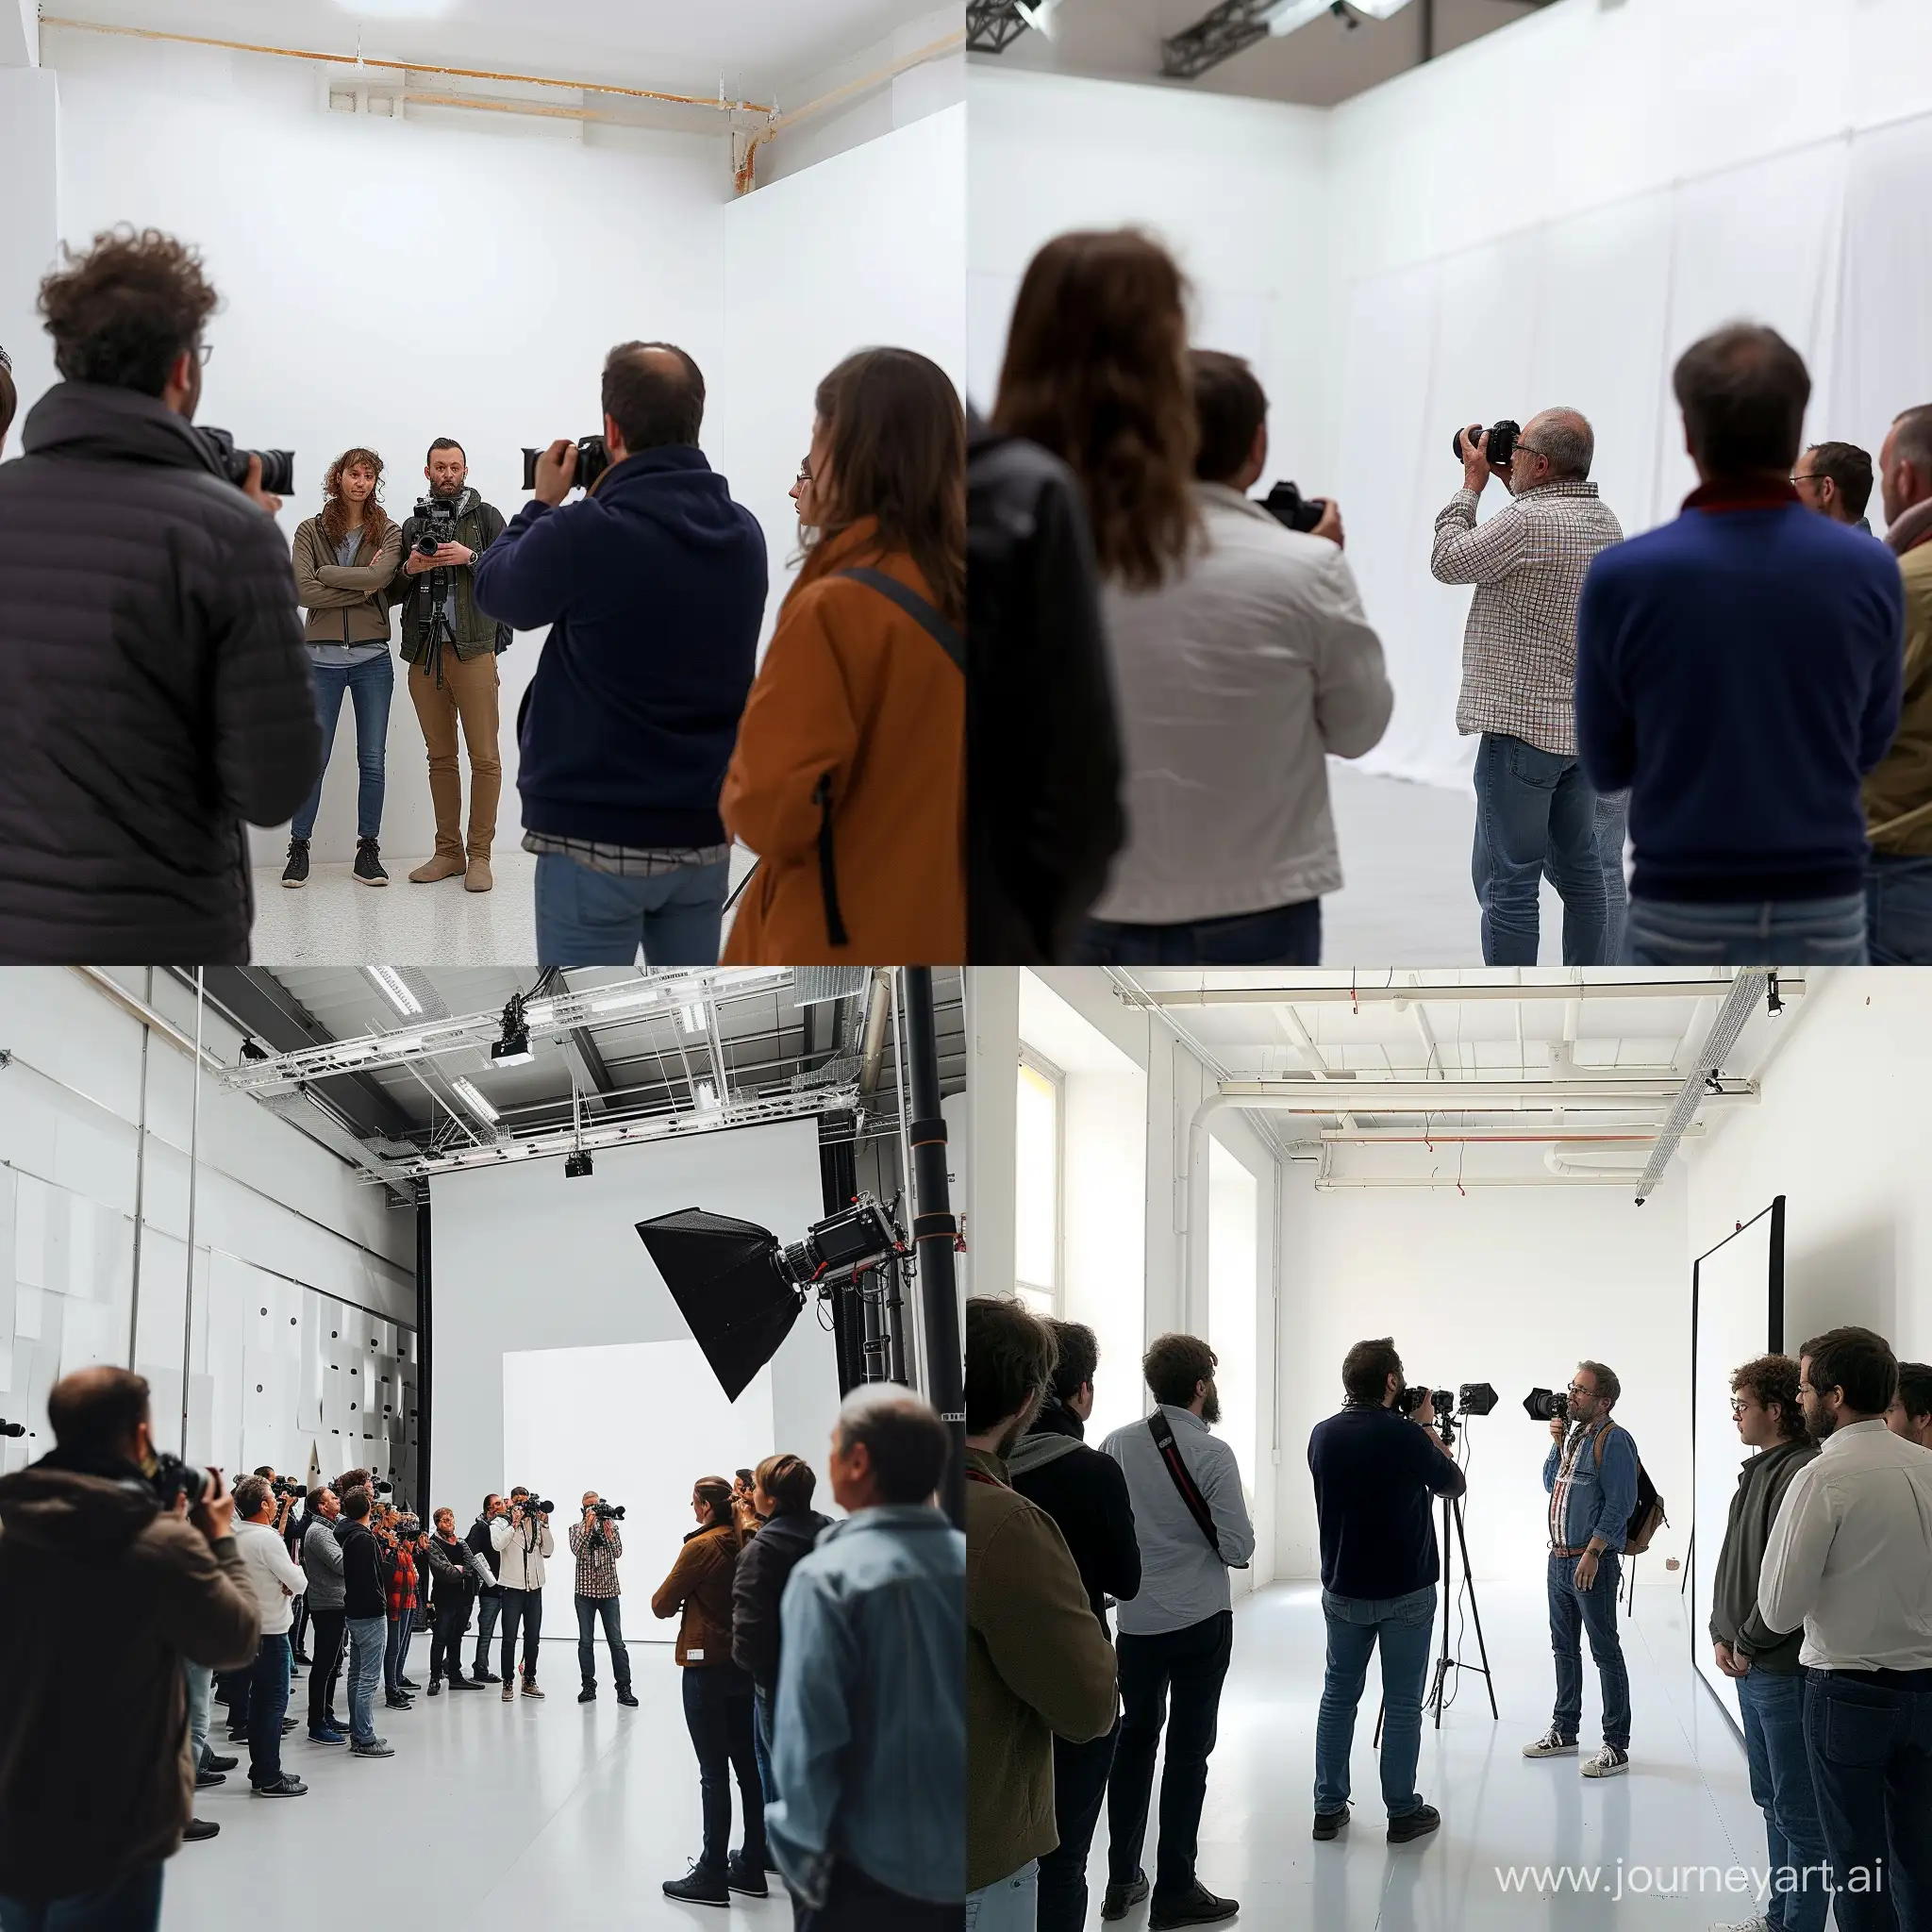 مجموعة مصورين في ورشة تدريبية في قاعة جدرانها بيضاء يقدمها مصور ويشرح لهم على جهاز الكاميرا (الصورة بعيدة)